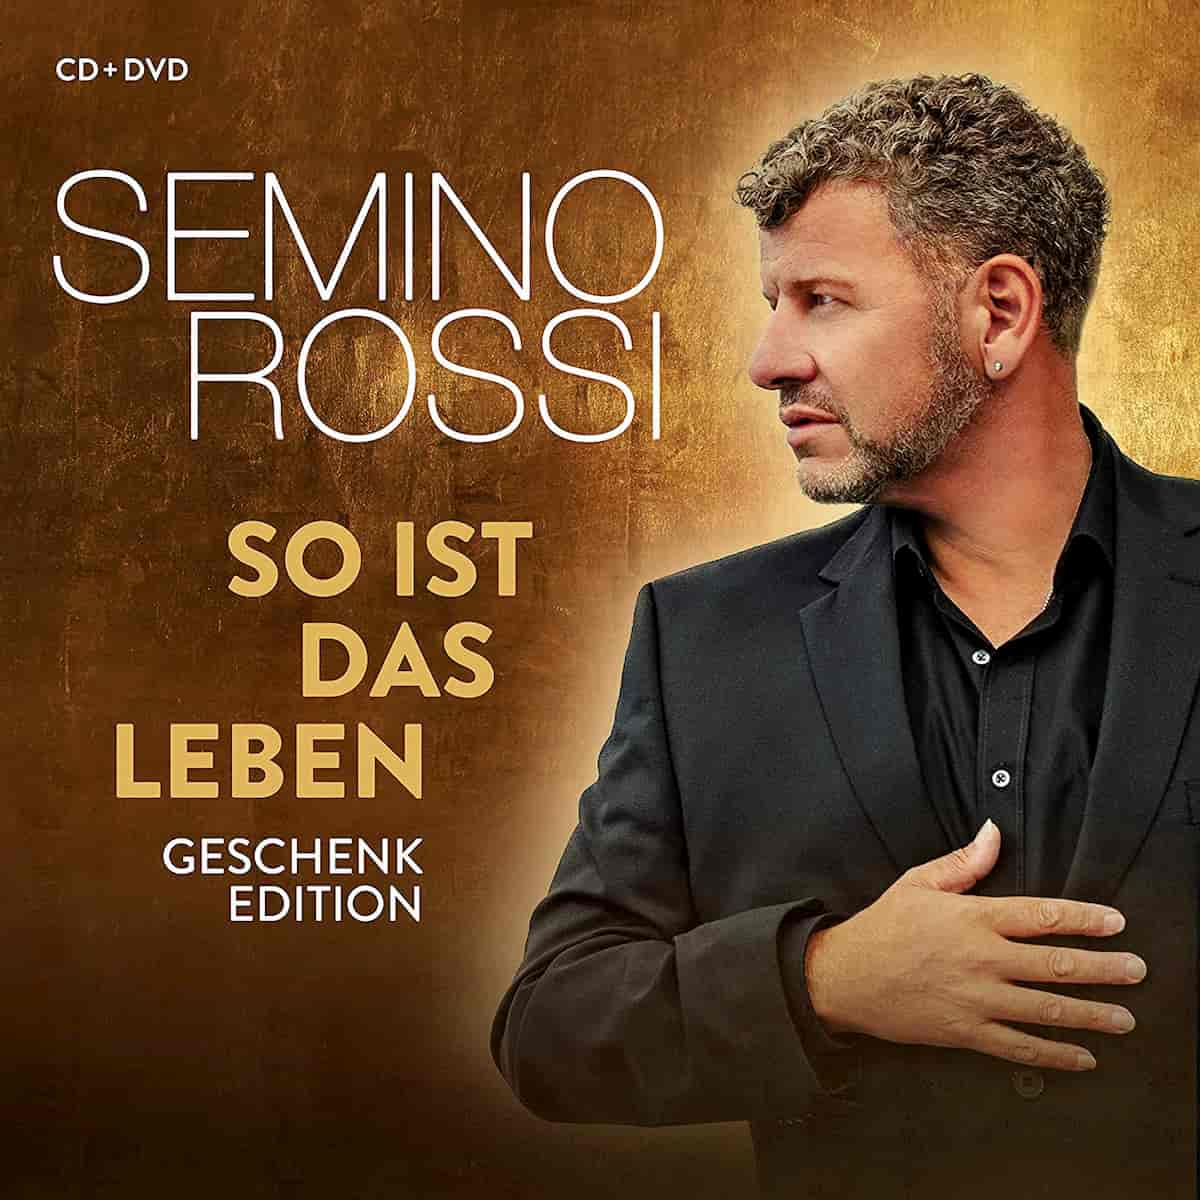 Semino Rossi veröffentlicht neue CD „So ist das Leben“ 2020